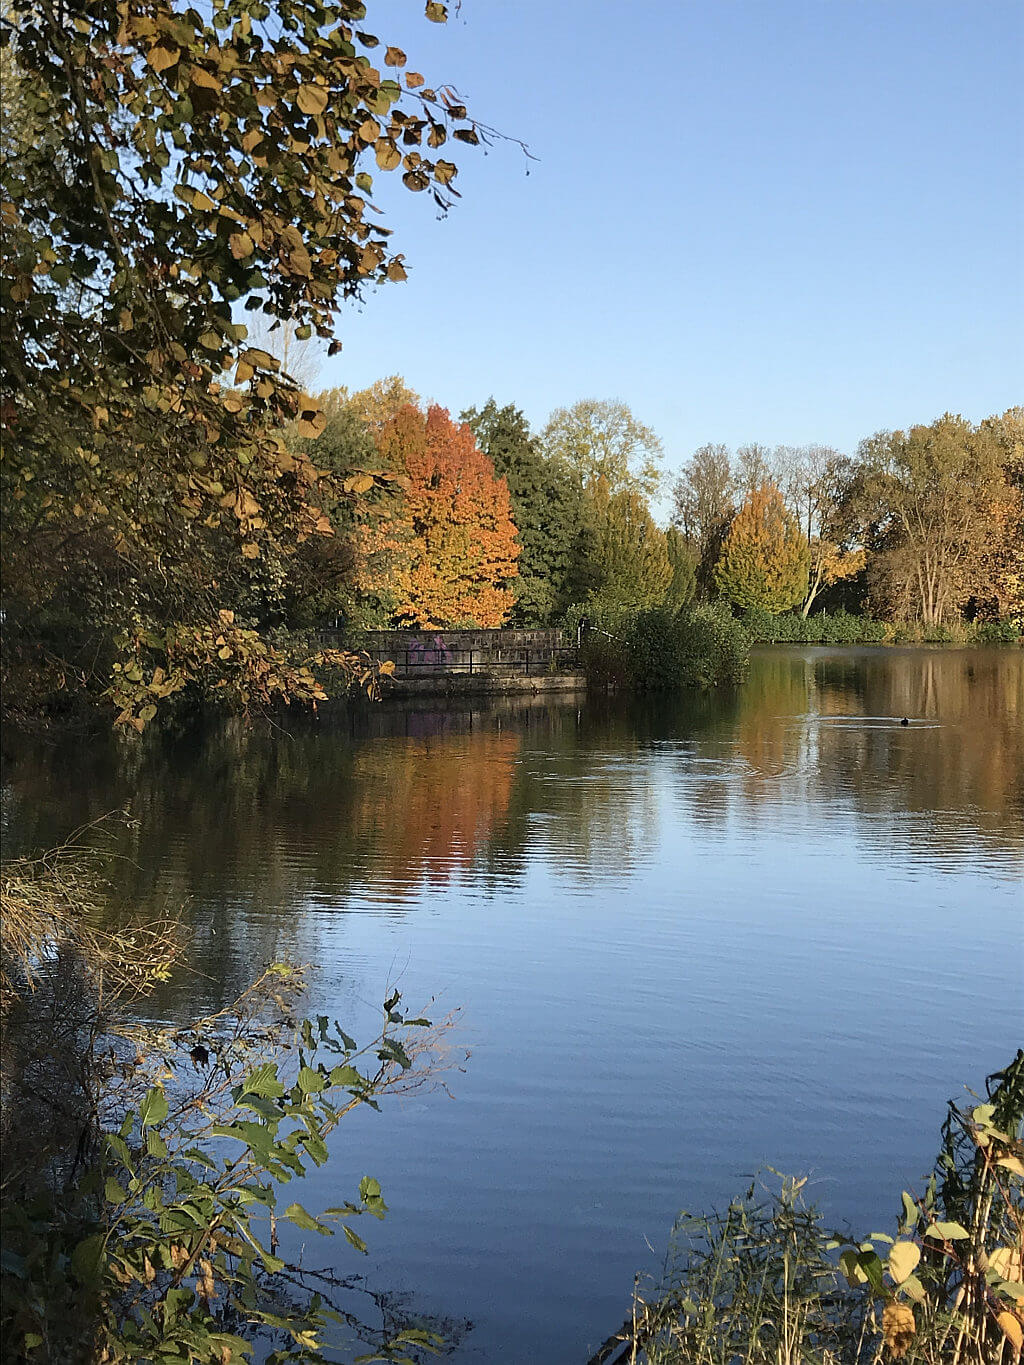 Teiche in Gladbeck - Nordparkteich im Herbst